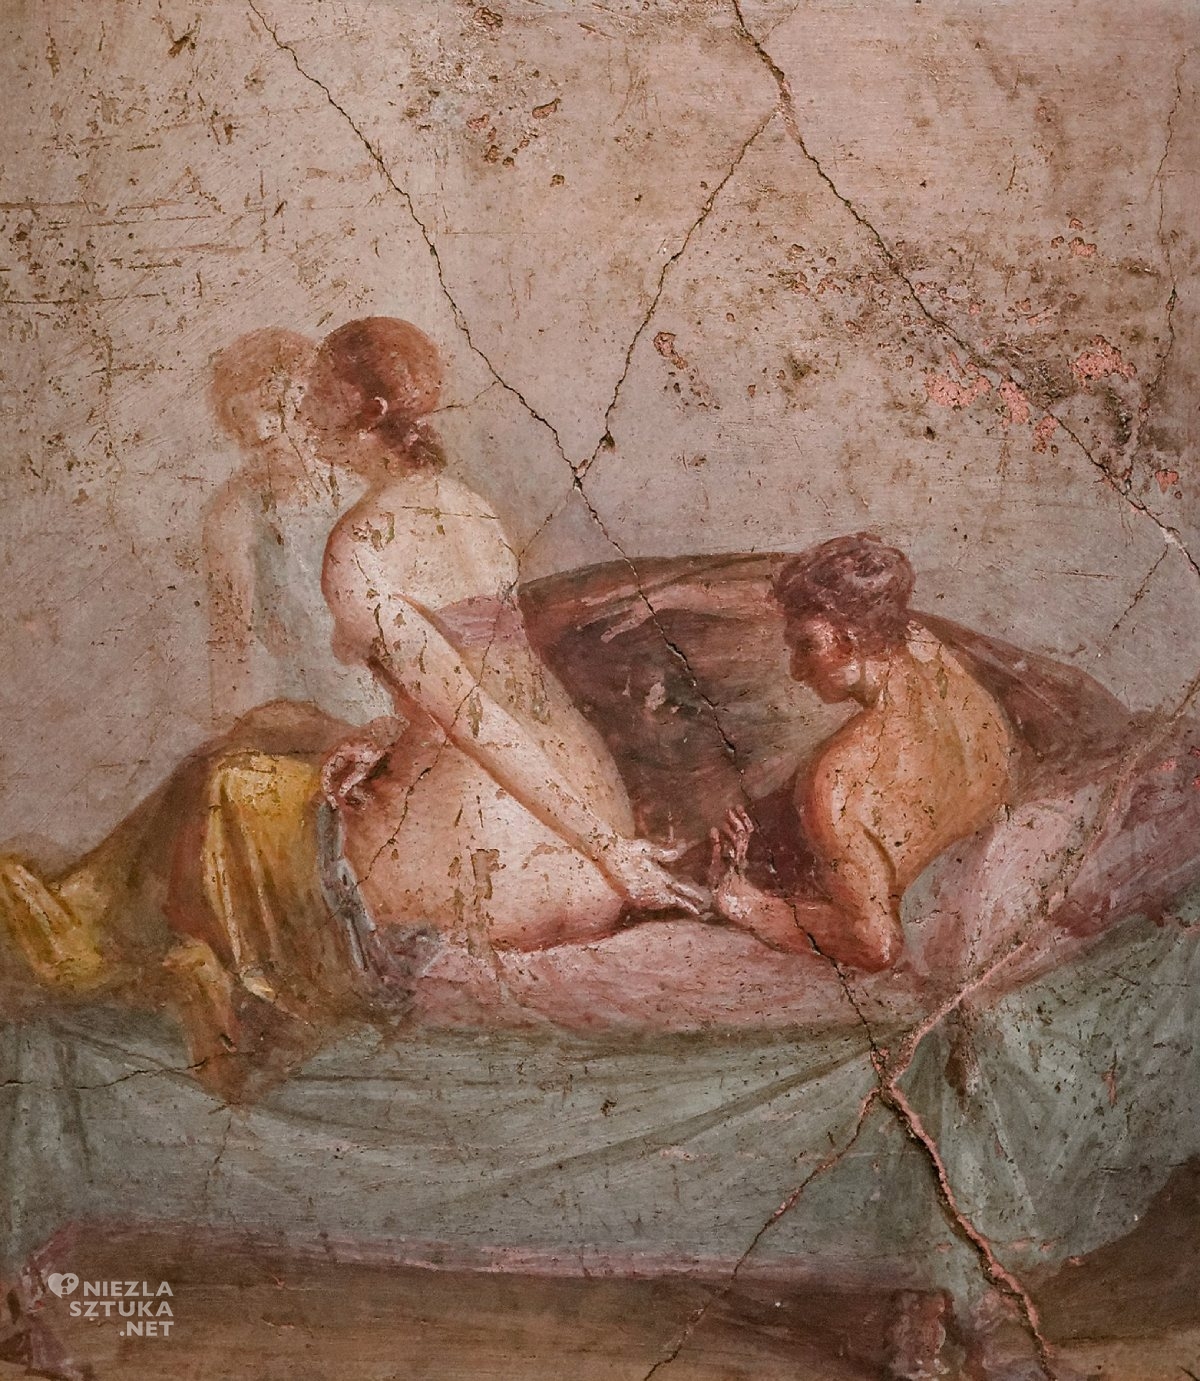 Pompeje, wykopaliska, freski z Pompejów, sztuka starożytna, sztuka erotyczna, niezła sztuka